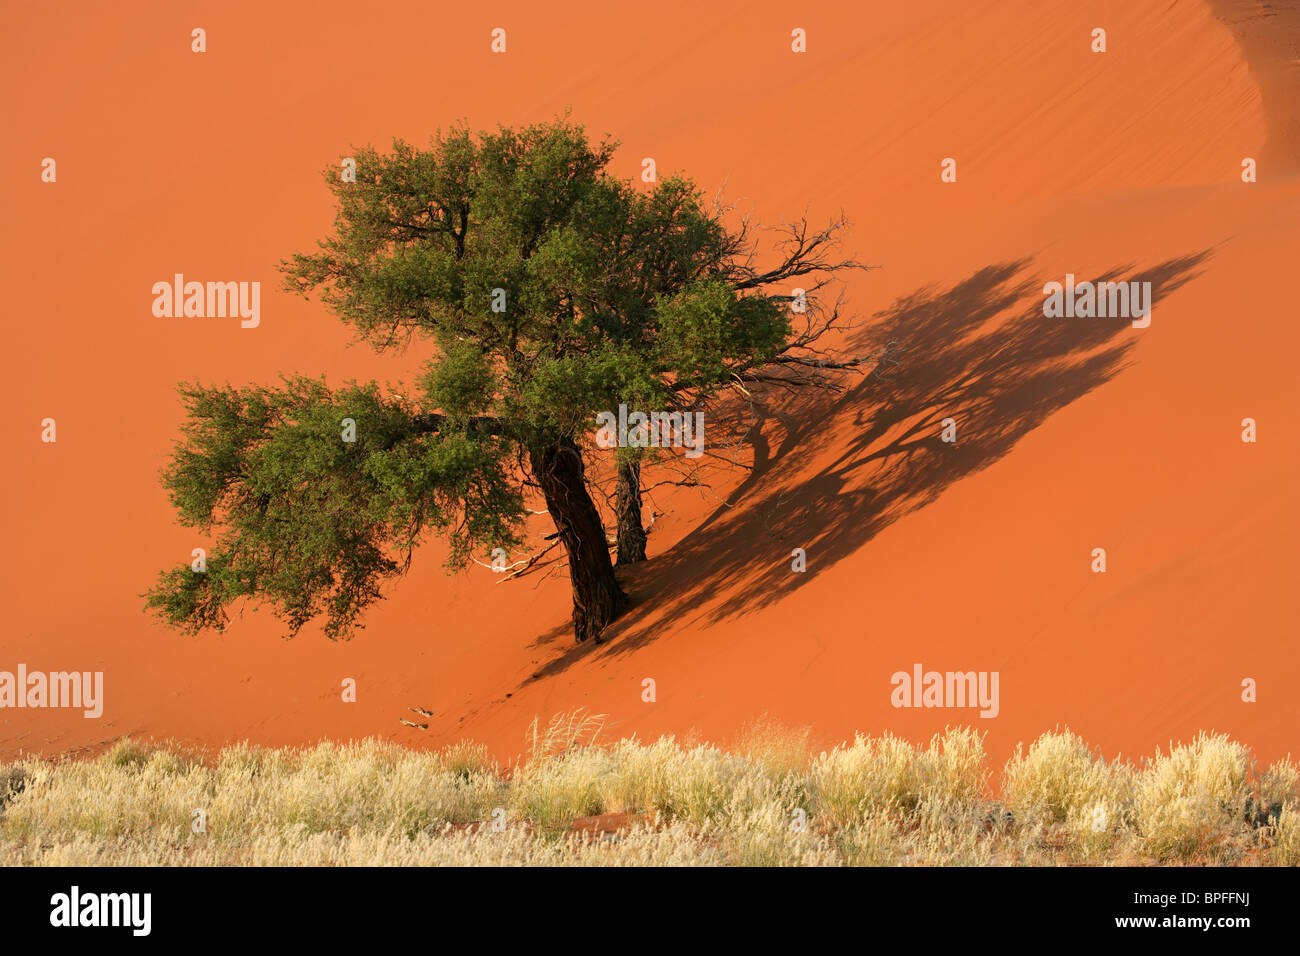 Dunas de arena roja con un árbol de acacia africana y los pastos del desierto, Sossusvlei, Namibia, Africa del Sur Foto de stock